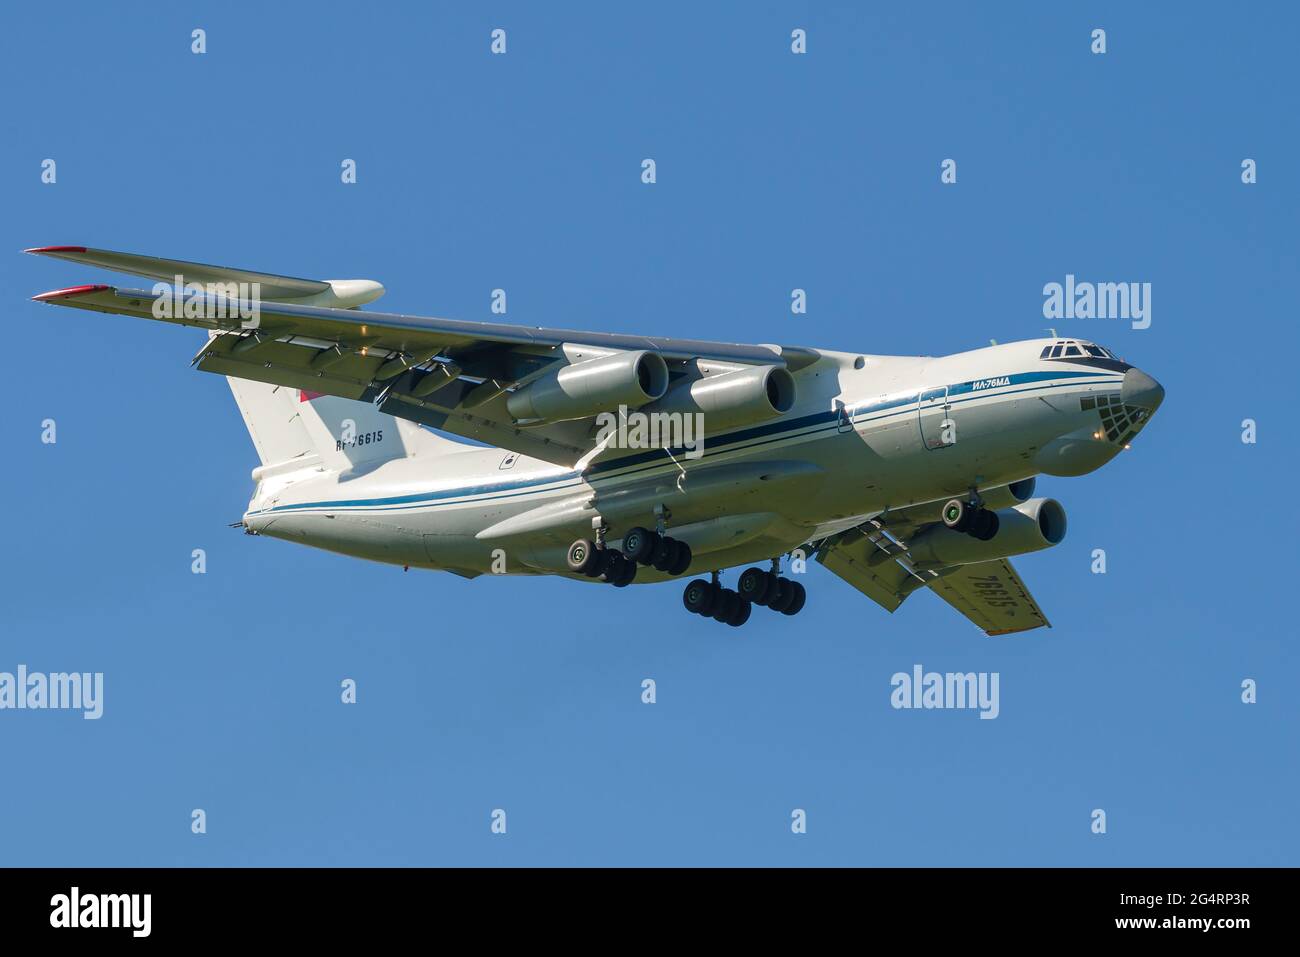 ST. PETERSBURG, RUSSLAND - 29. MAI 2021: SCHWERES Militärtransportflugzeug IL-76MD (RF-76615) auf einer Gleitbahn Stockfoto